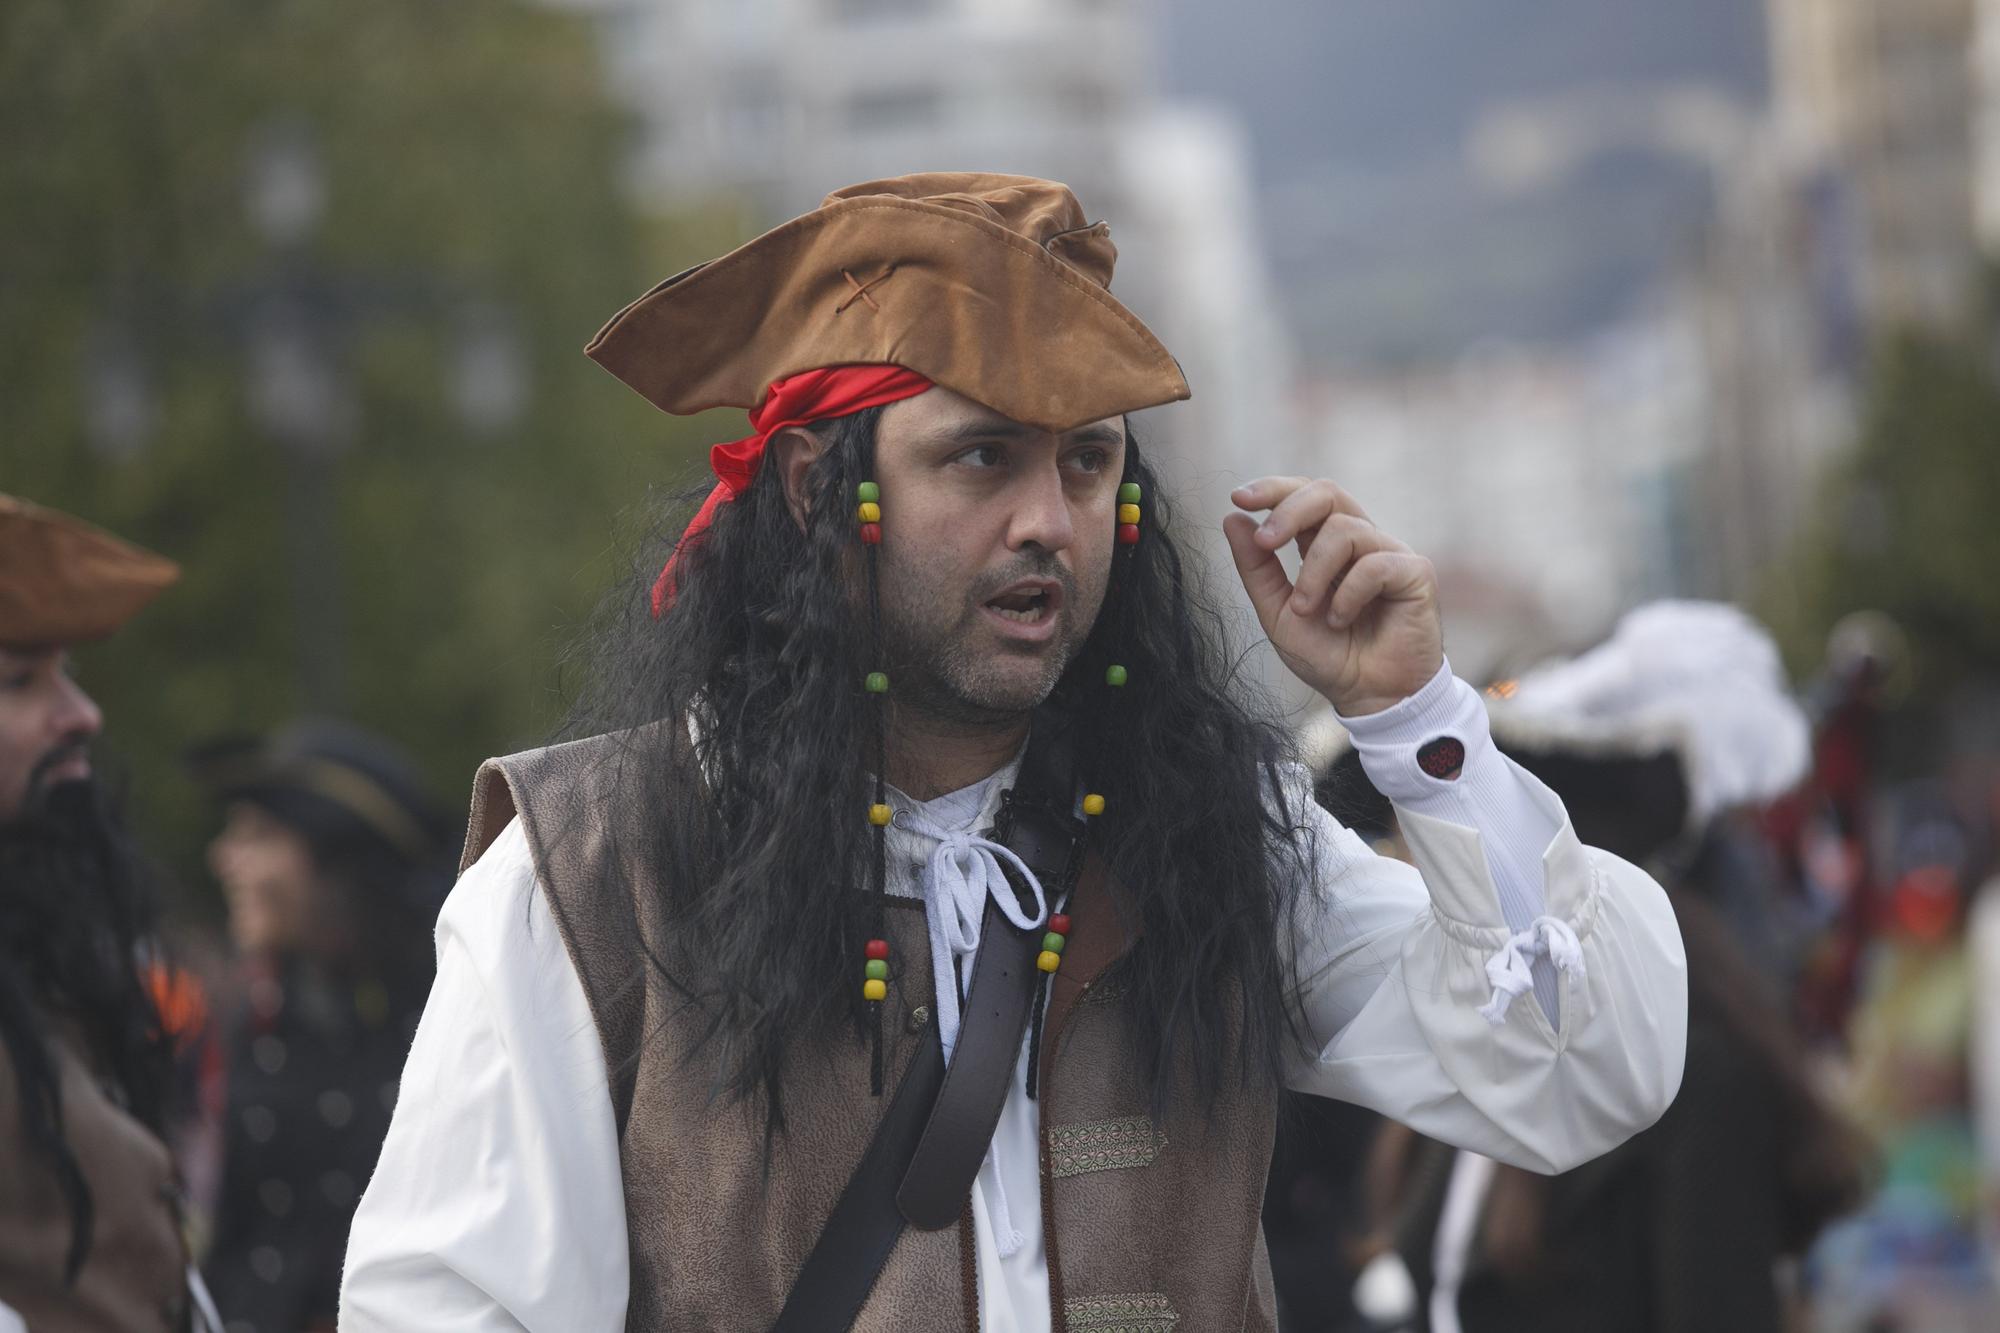 Galería de fotos: Así fue el gran desfile del carnaval en Oviedo